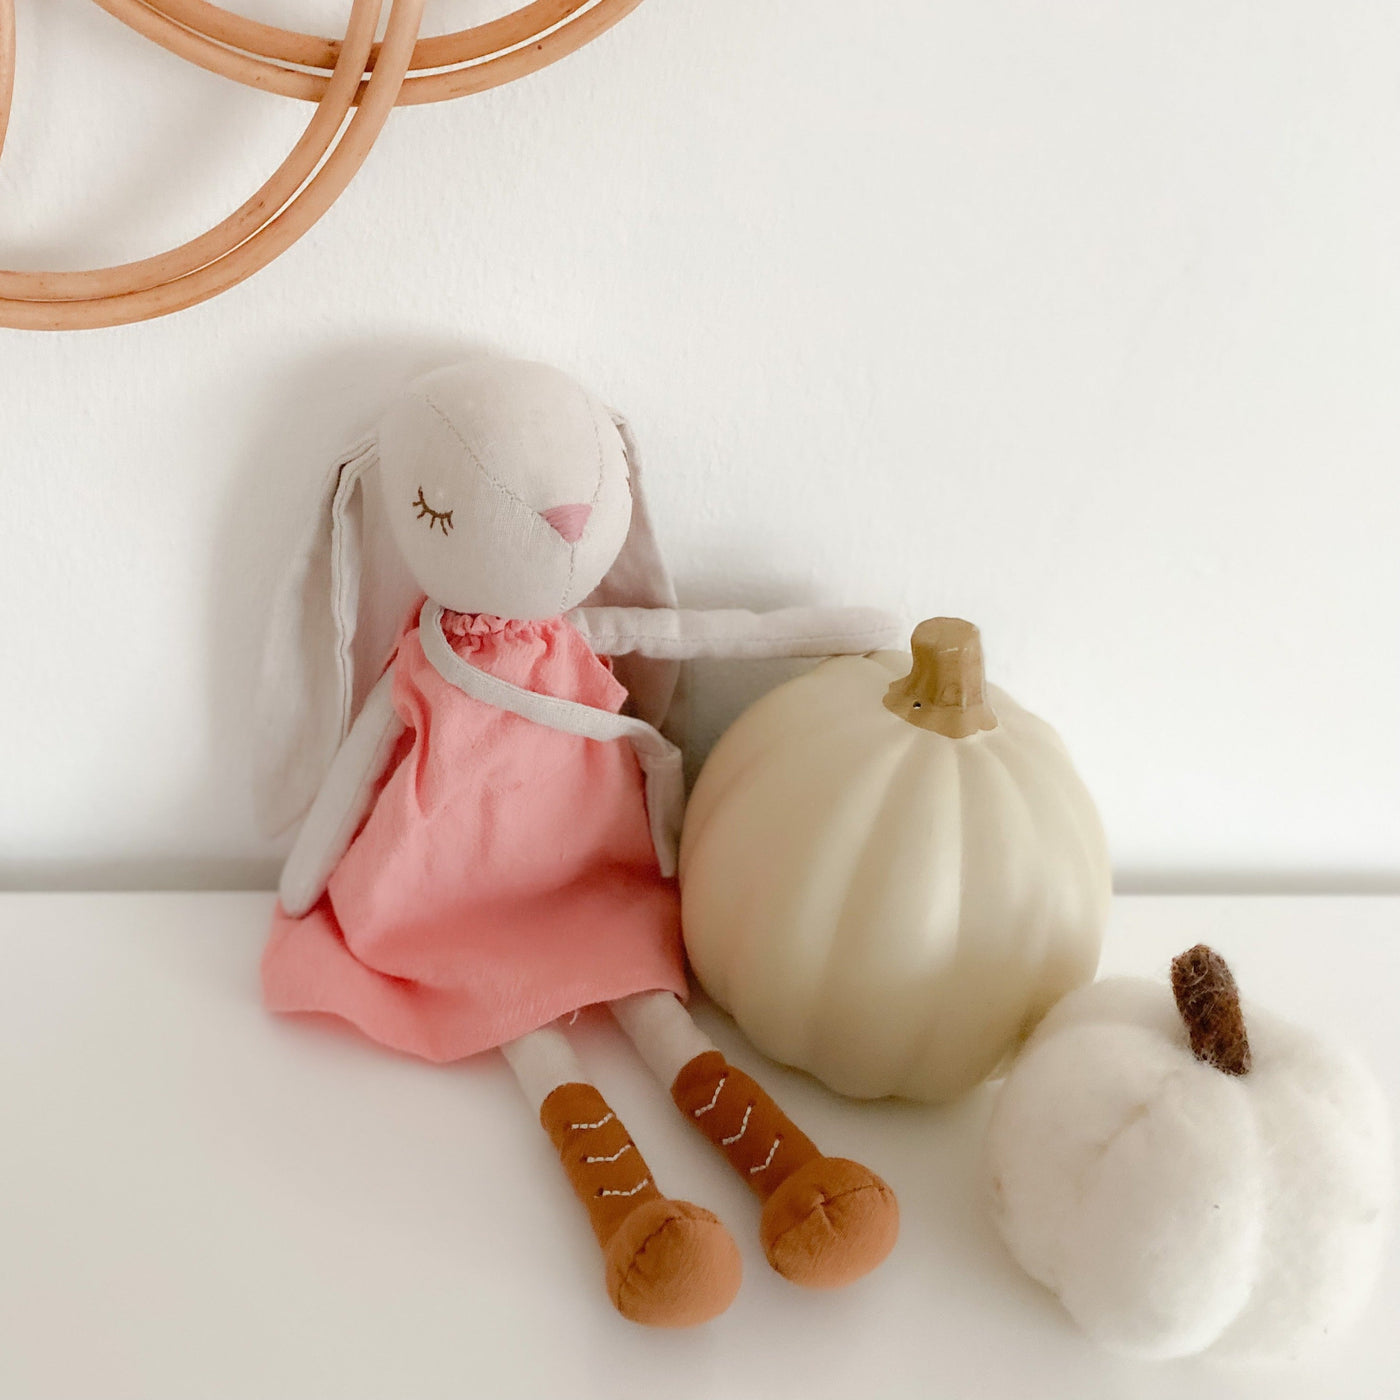 Mon Ami Hazel The Bunny Soft Doll